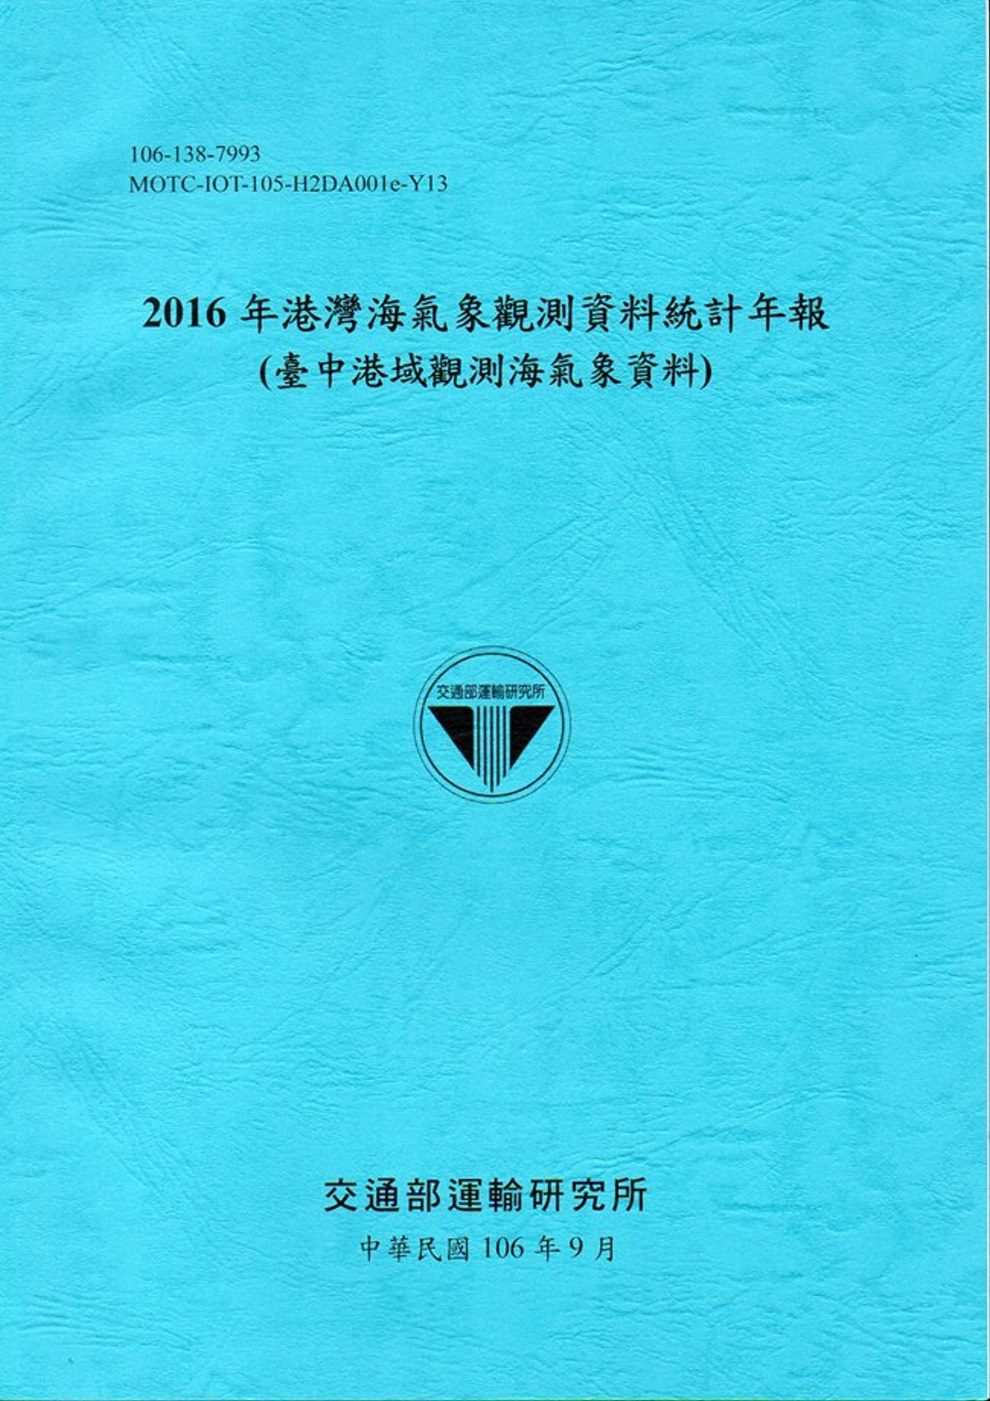 2016年港灣海氣象觀測資料統計年報(臺中港域觀測海氣象資料)106深藍